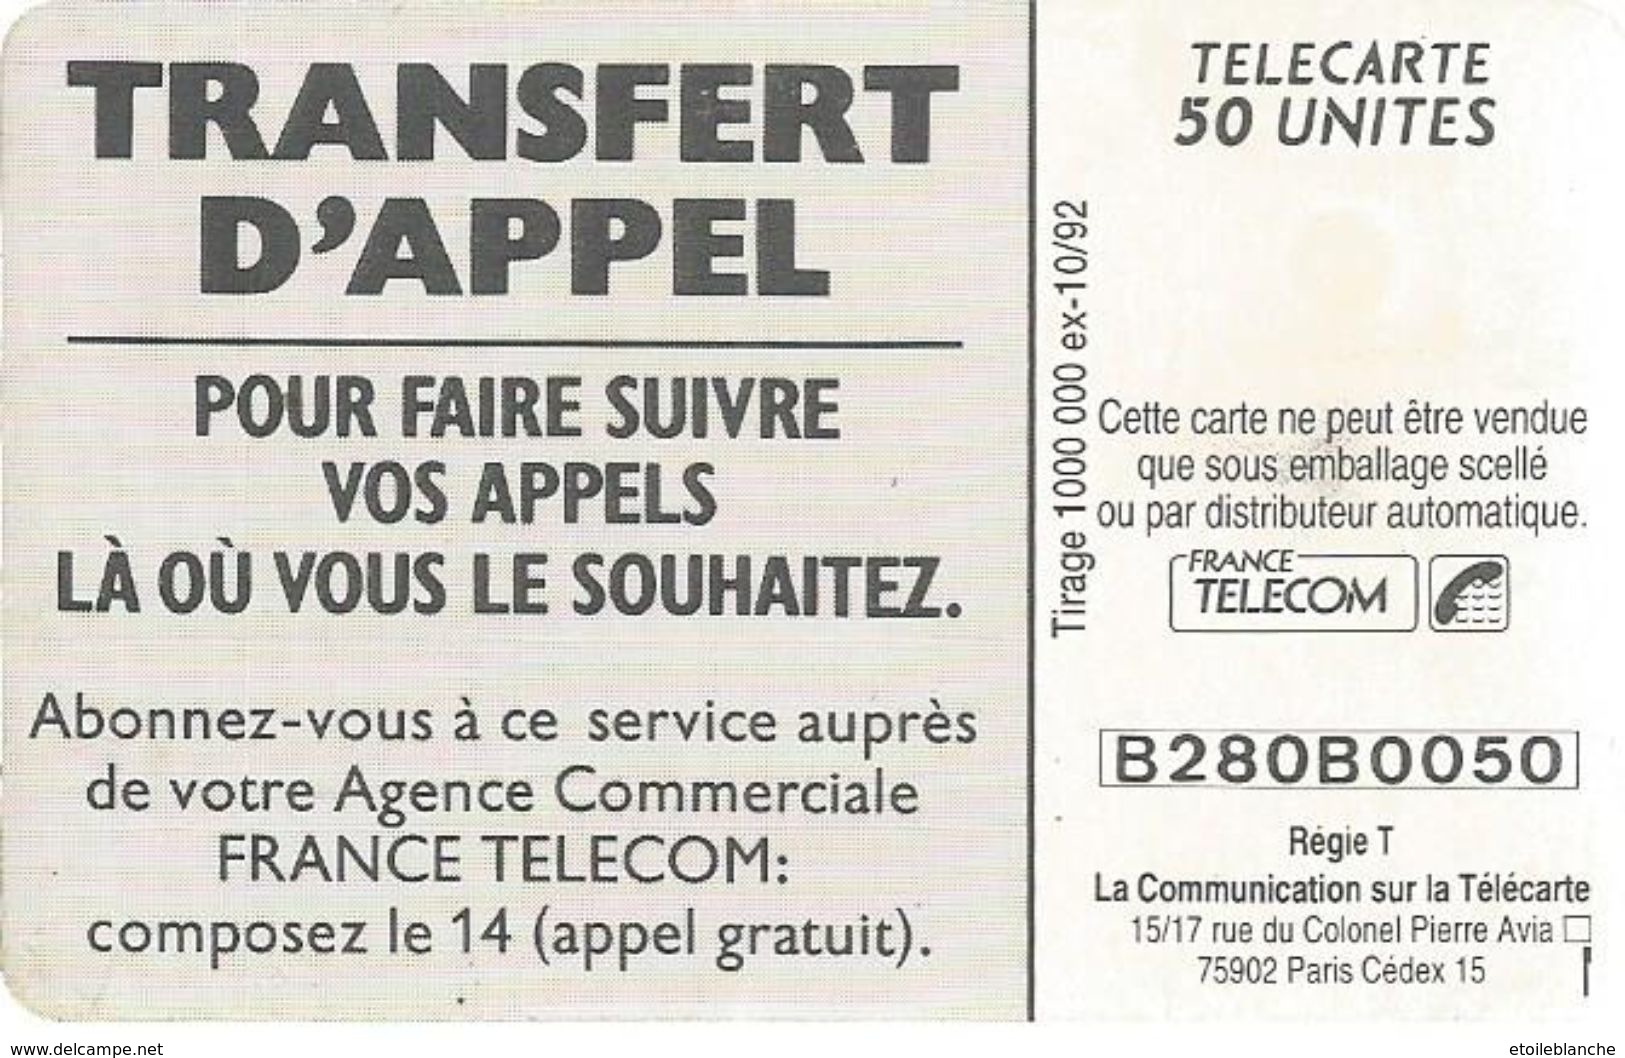 Telecarte France Telecom 1992 - Publicité, Transfert D'appel - Homme En Vacances, Plage, Famille - Telecom